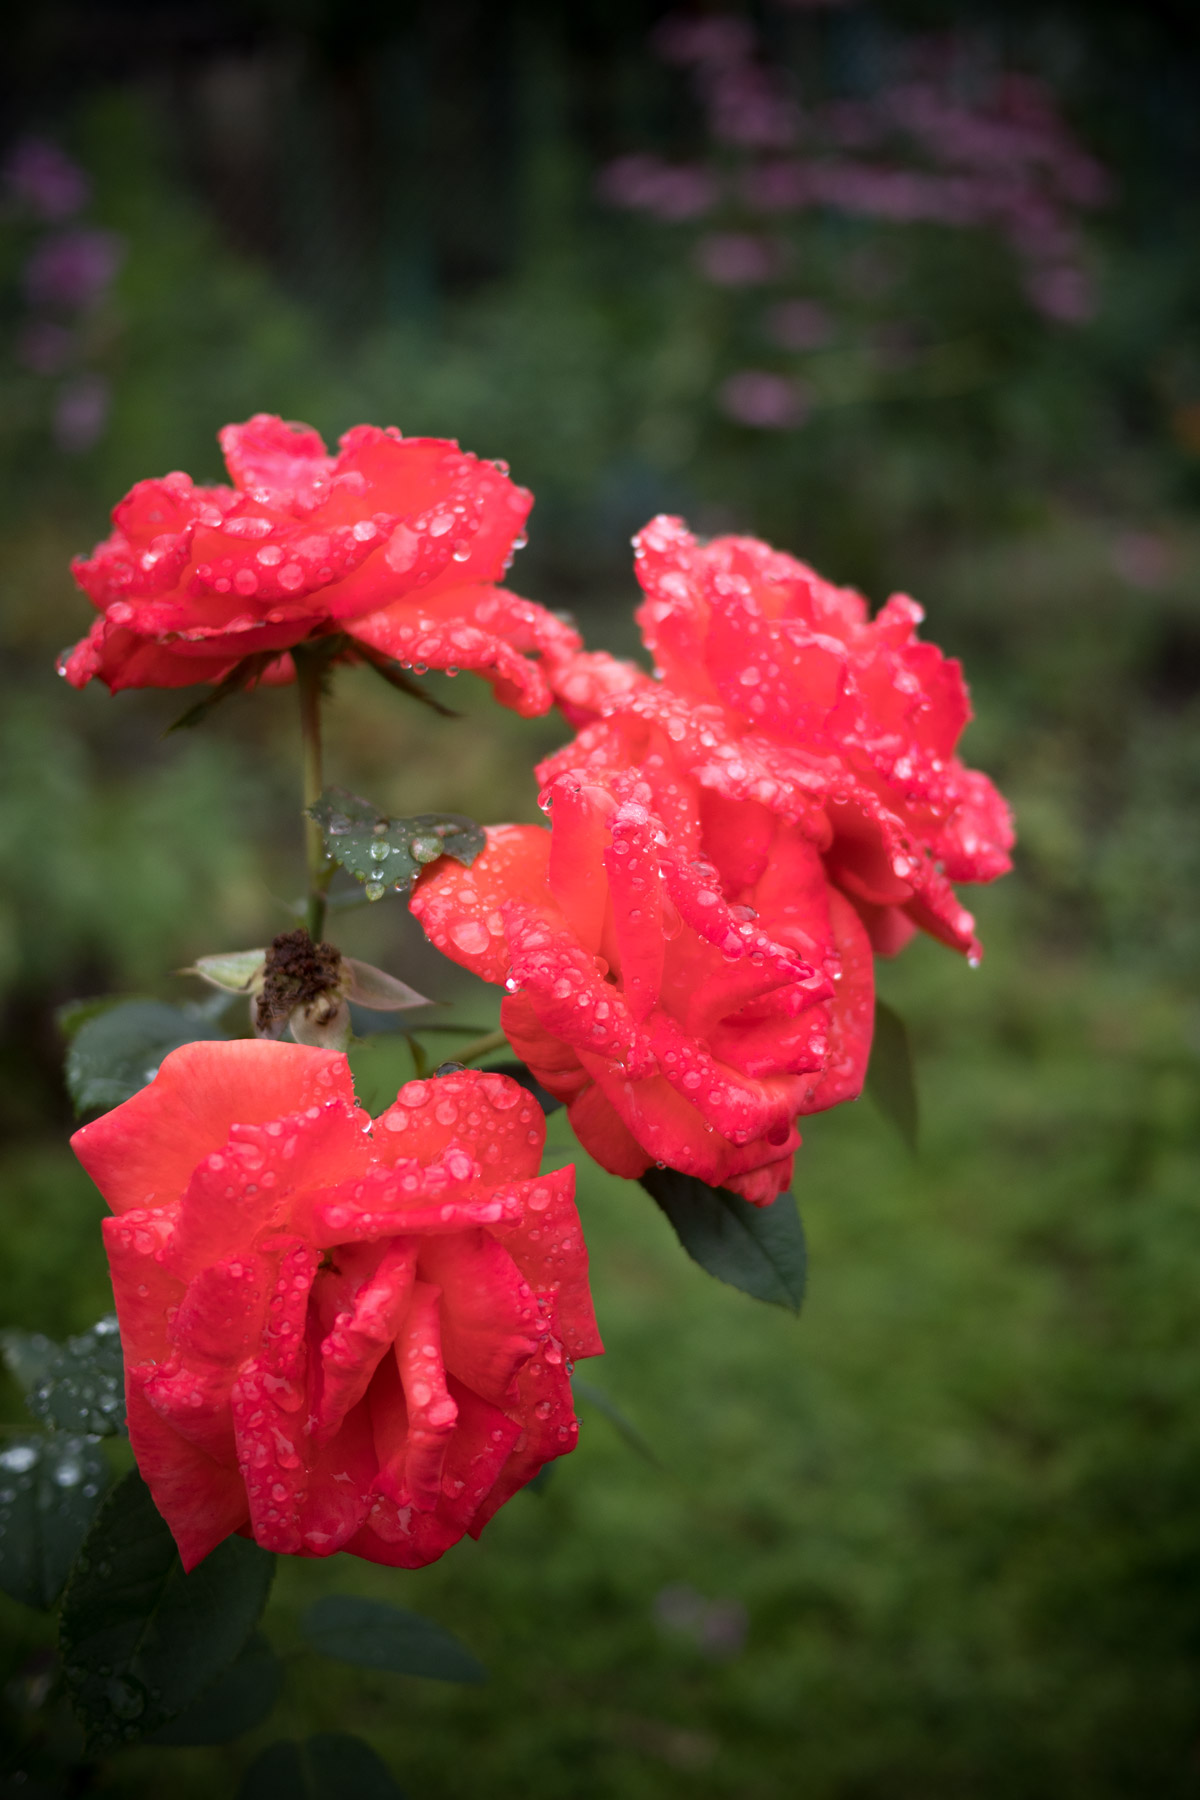 雨上がりび深緑の上に艶めかしく浮かぶ、滴る真紅の薔薇の花